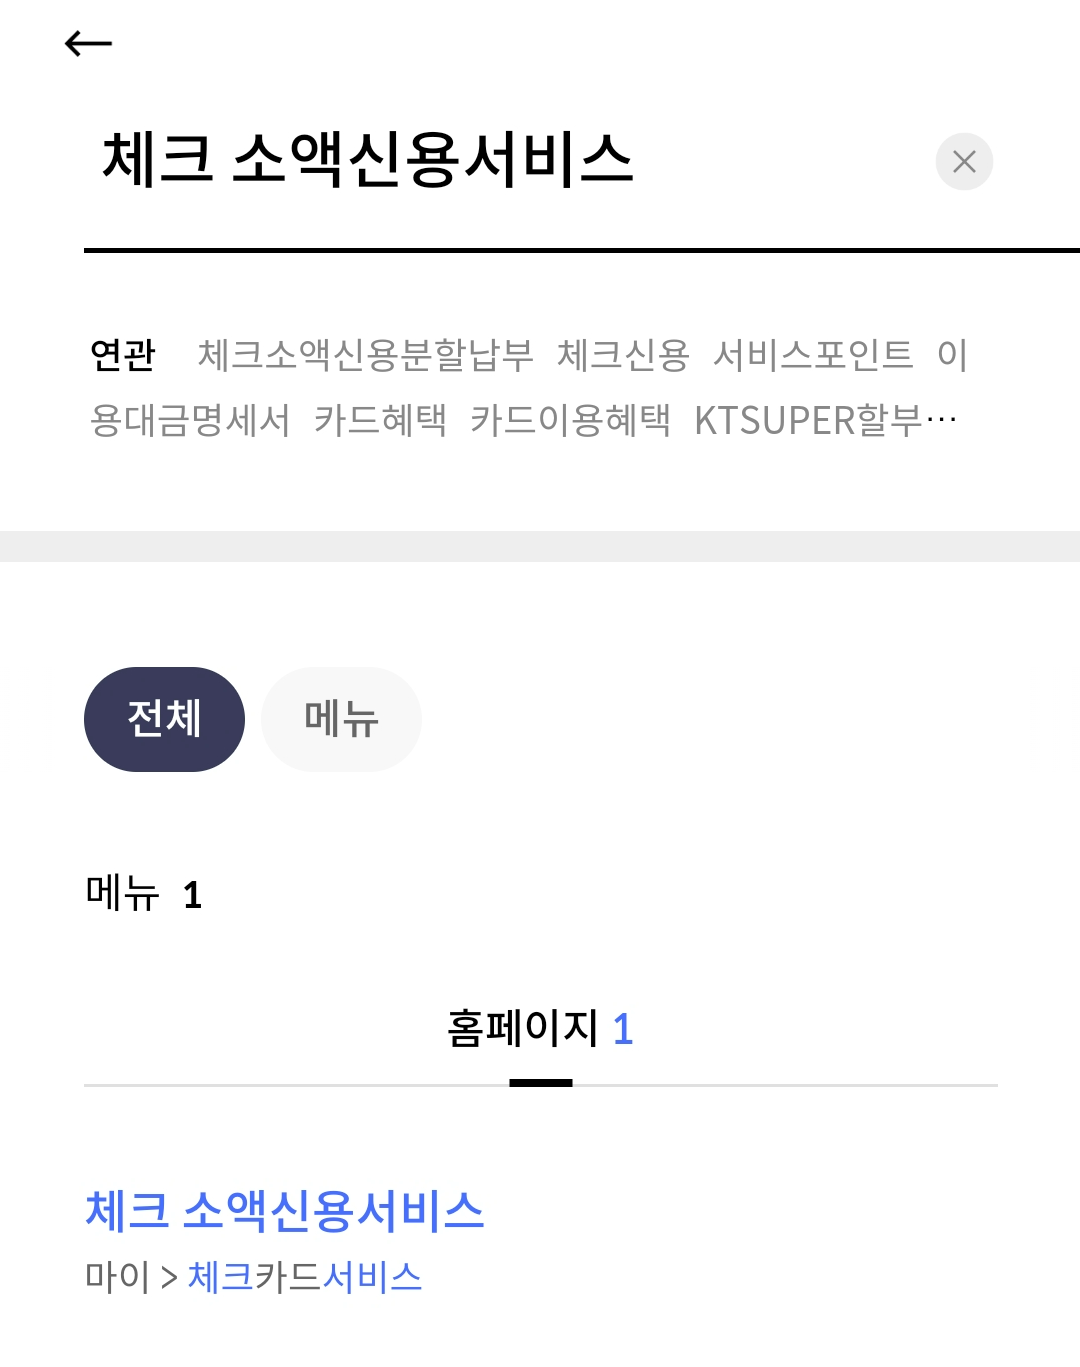 신한카드 앱에서 체크 소액신용서비스 신청